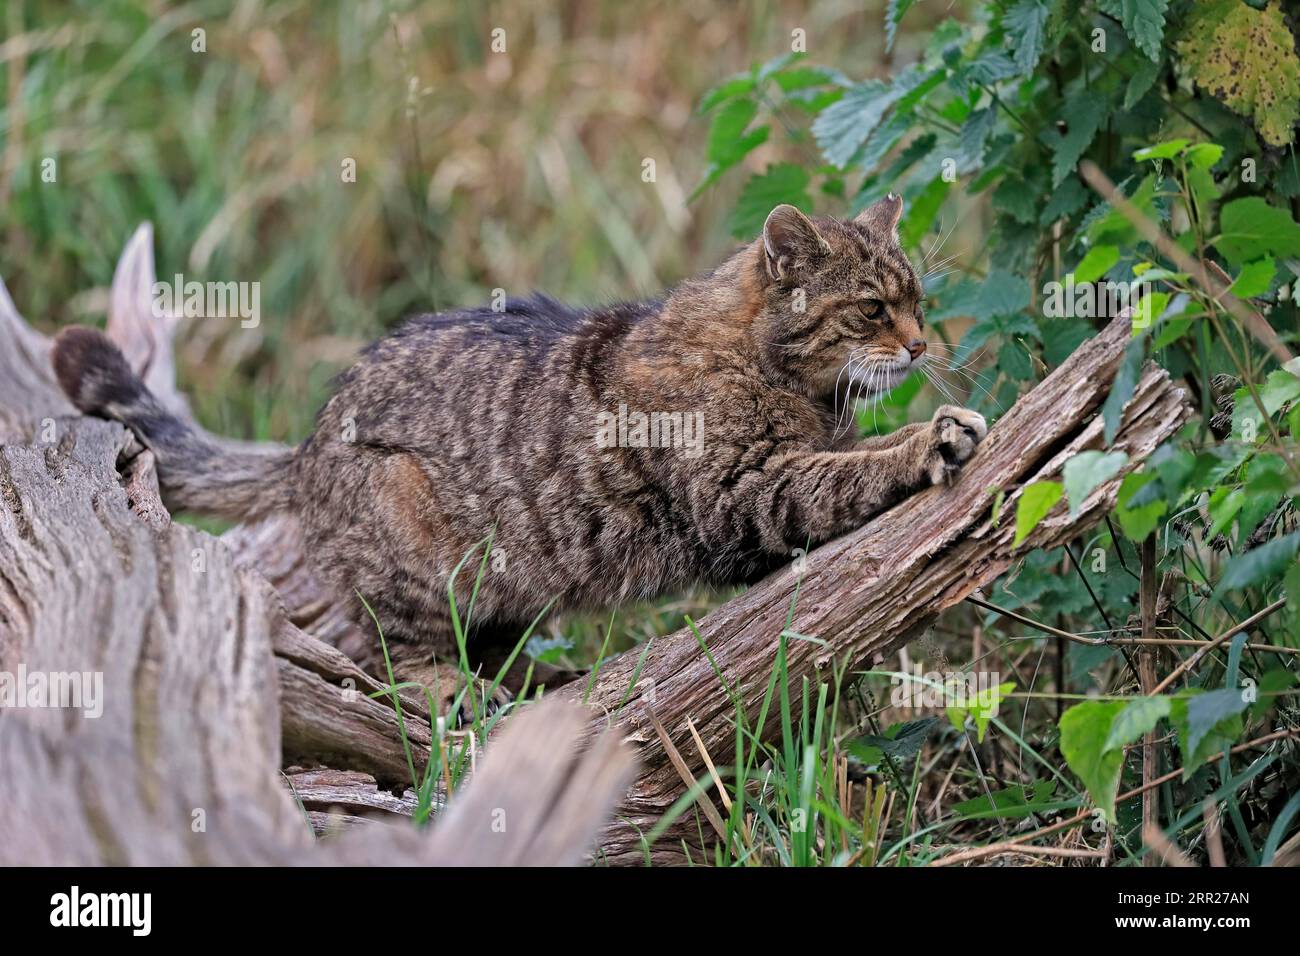 Europäische Wildkatze (Felis silvestris), Erwachsene, am Baumstamm, Krallen schärfen, Alarm, Surrey, England, Großbritannien Stockfoto